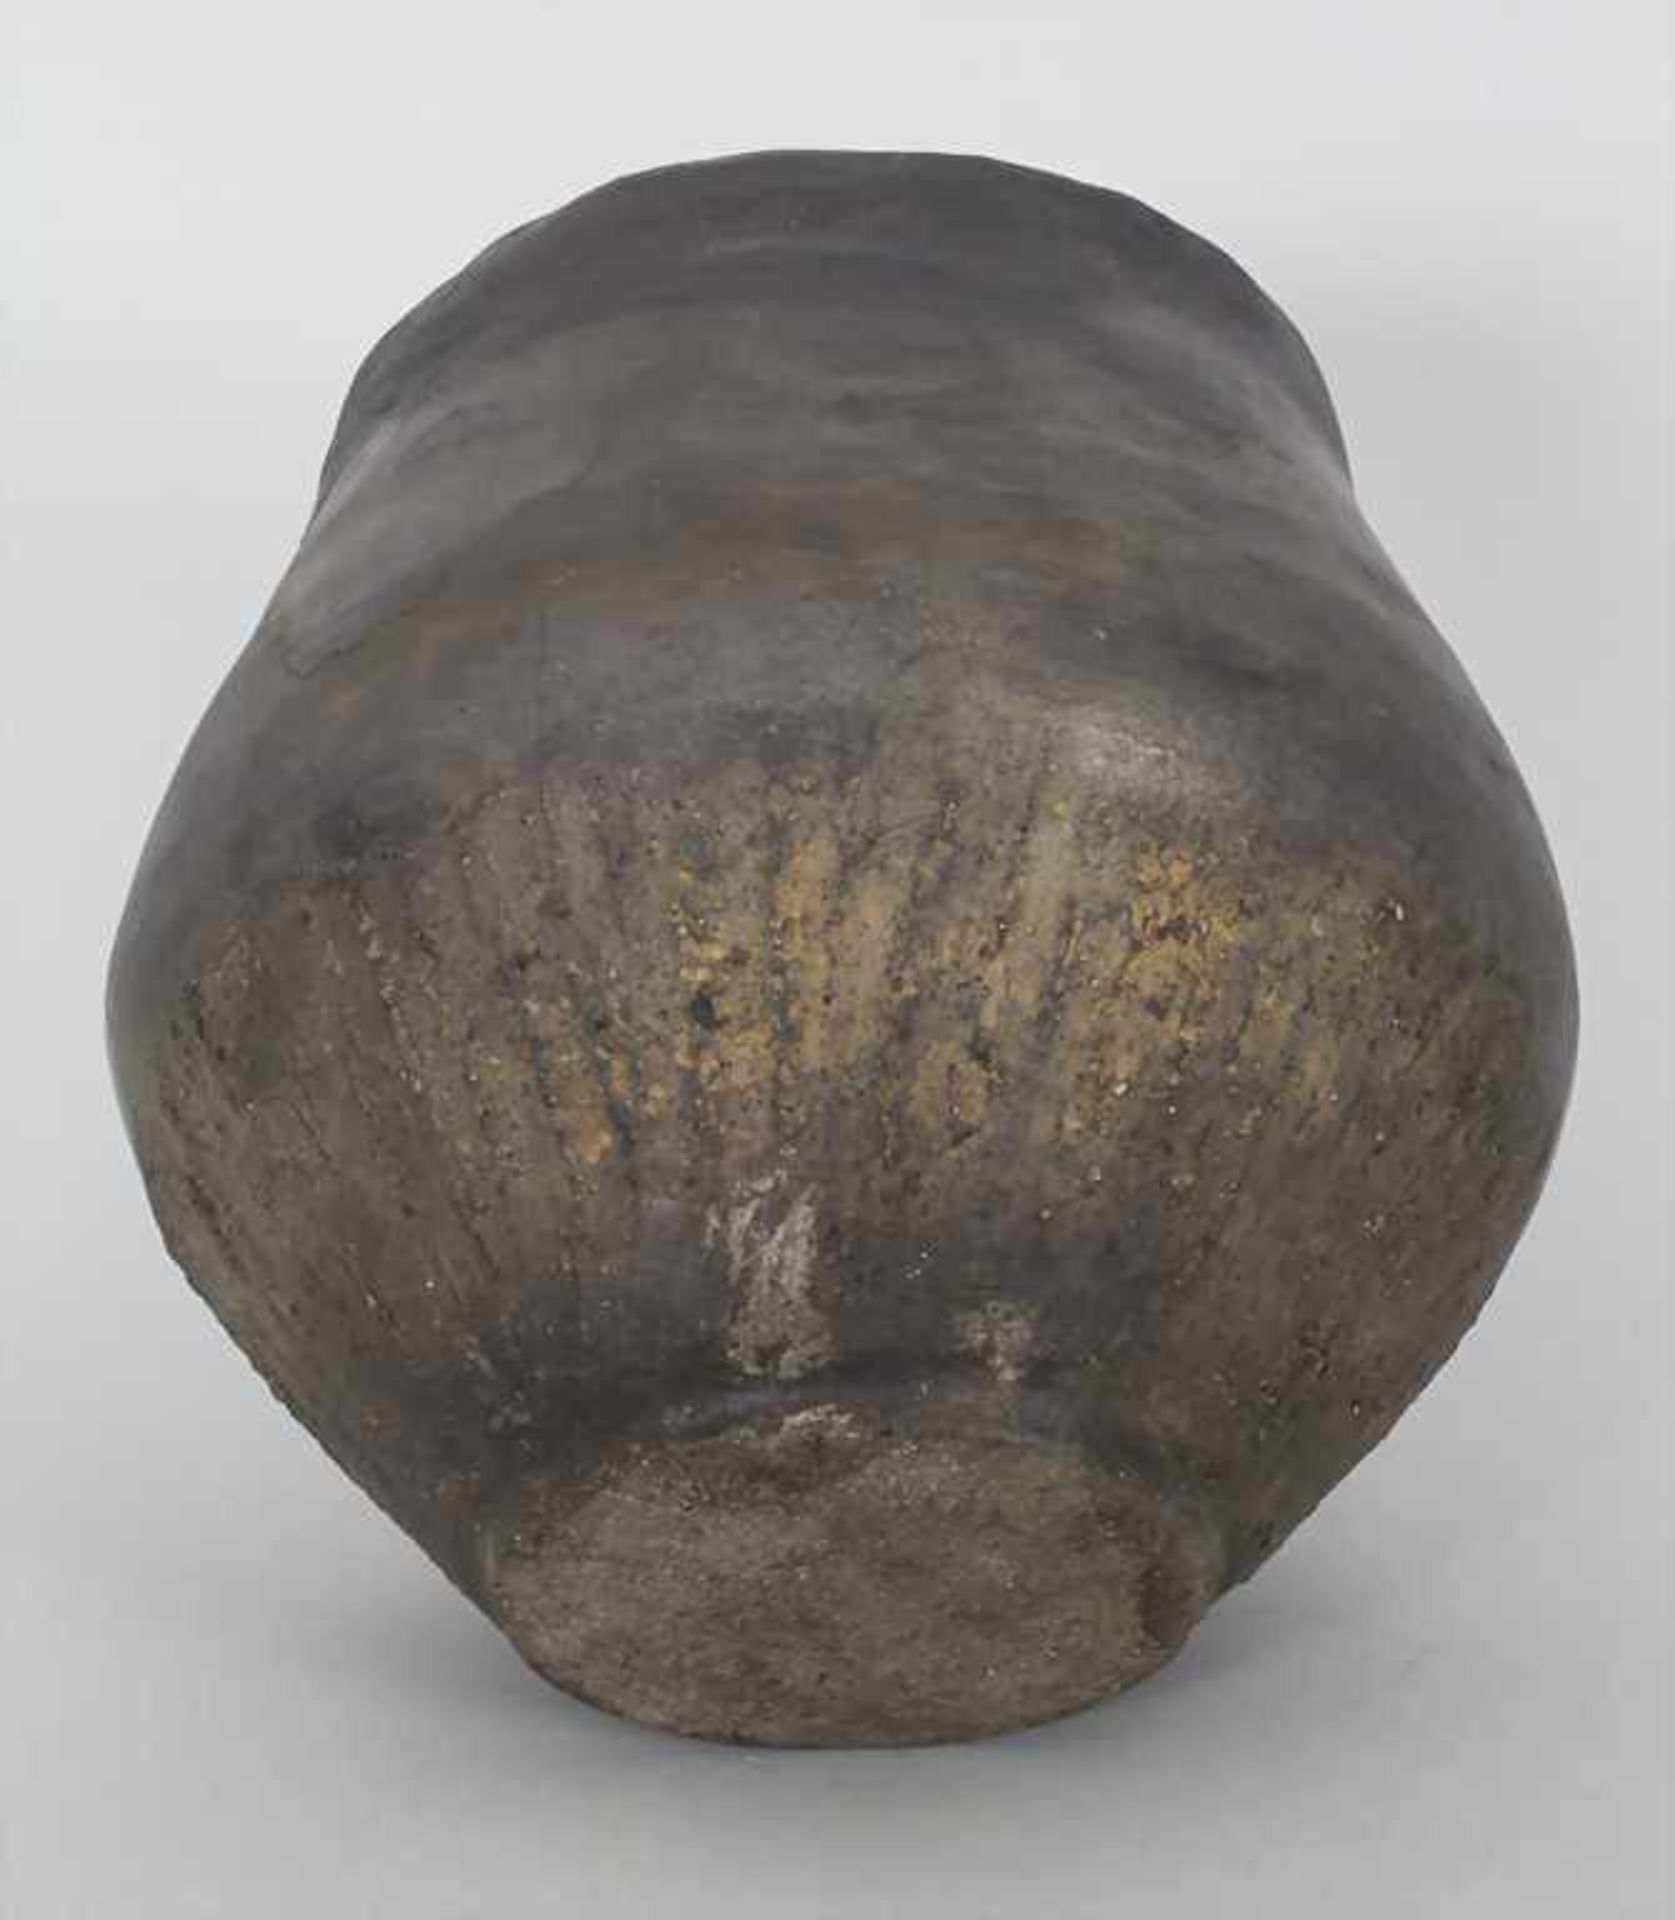 Bronzezeitliches Keramik-Gefäß / A Bronze Age ceramic vessel, Lausitzer Kultur, 9. - 6. Jh. v. Chr. - Image 5 of 6